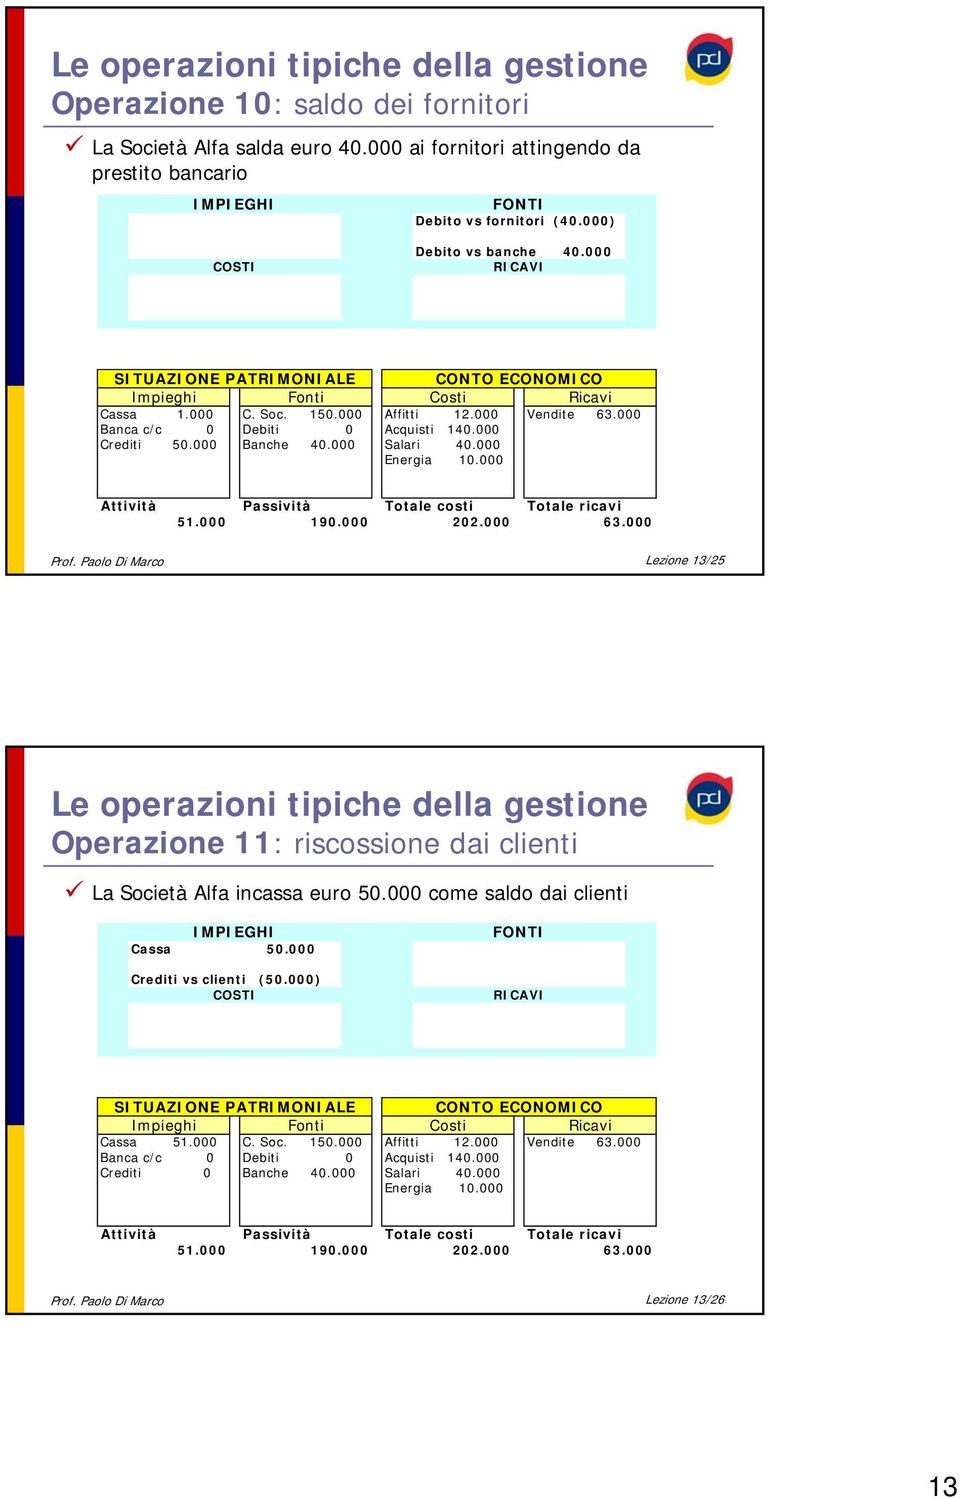 000 Prof. Paolo Di Marco Lezione 13/25 Le operazioni tipiche della gestione Operazione 11: riscossione dai clienti La Società Alfa incassa euro 50.000 come saldo dai clienti Cassa 50.